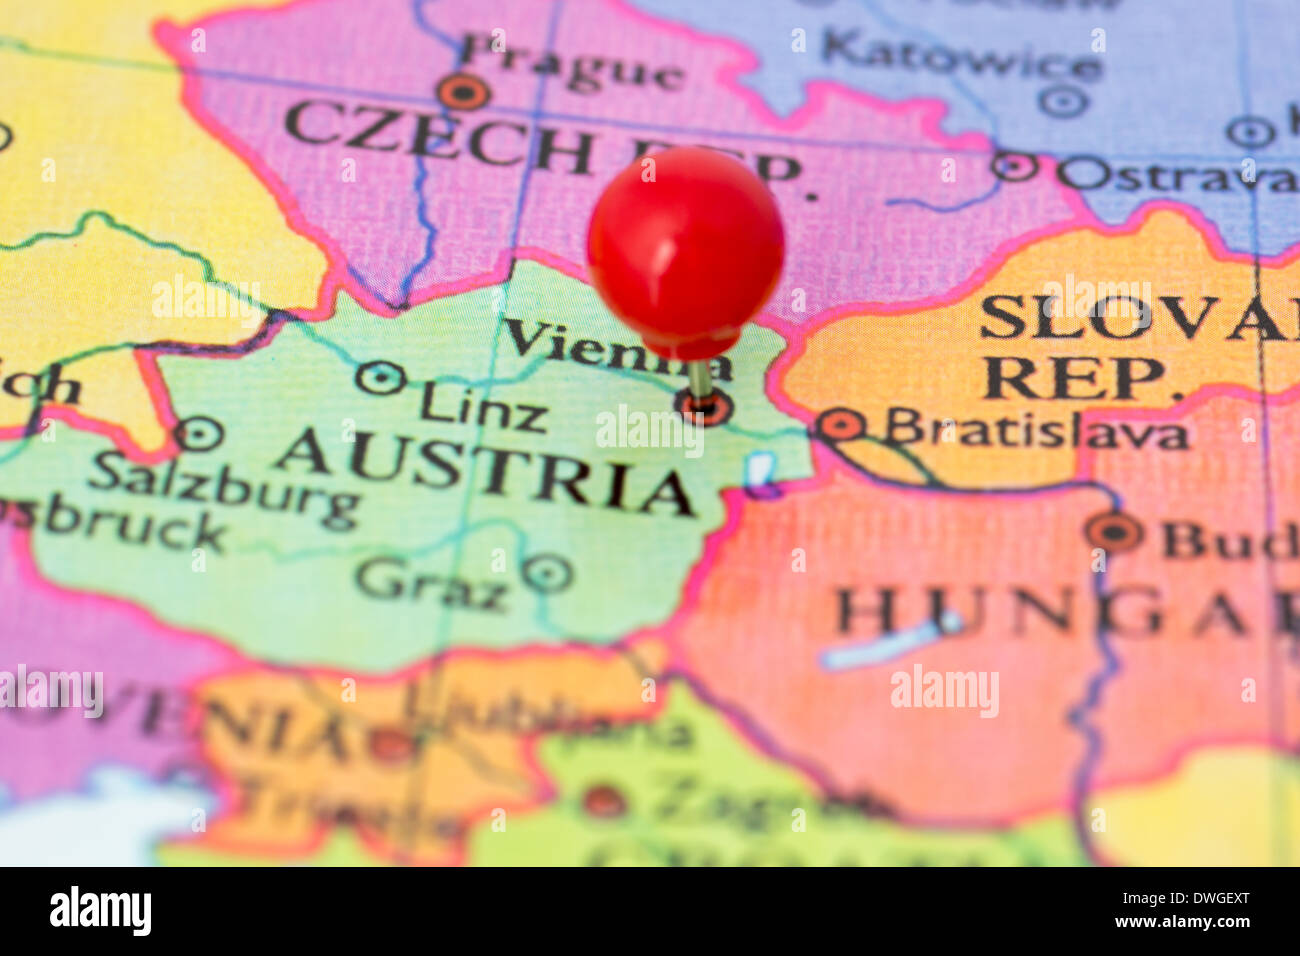 Runde rote Daumen gestochen eingeklemmt durch Stadt Wien in Österreich Karte. Teil der Kollektion deckt alle wichtige Hauptstädten Europas. Stockfoto